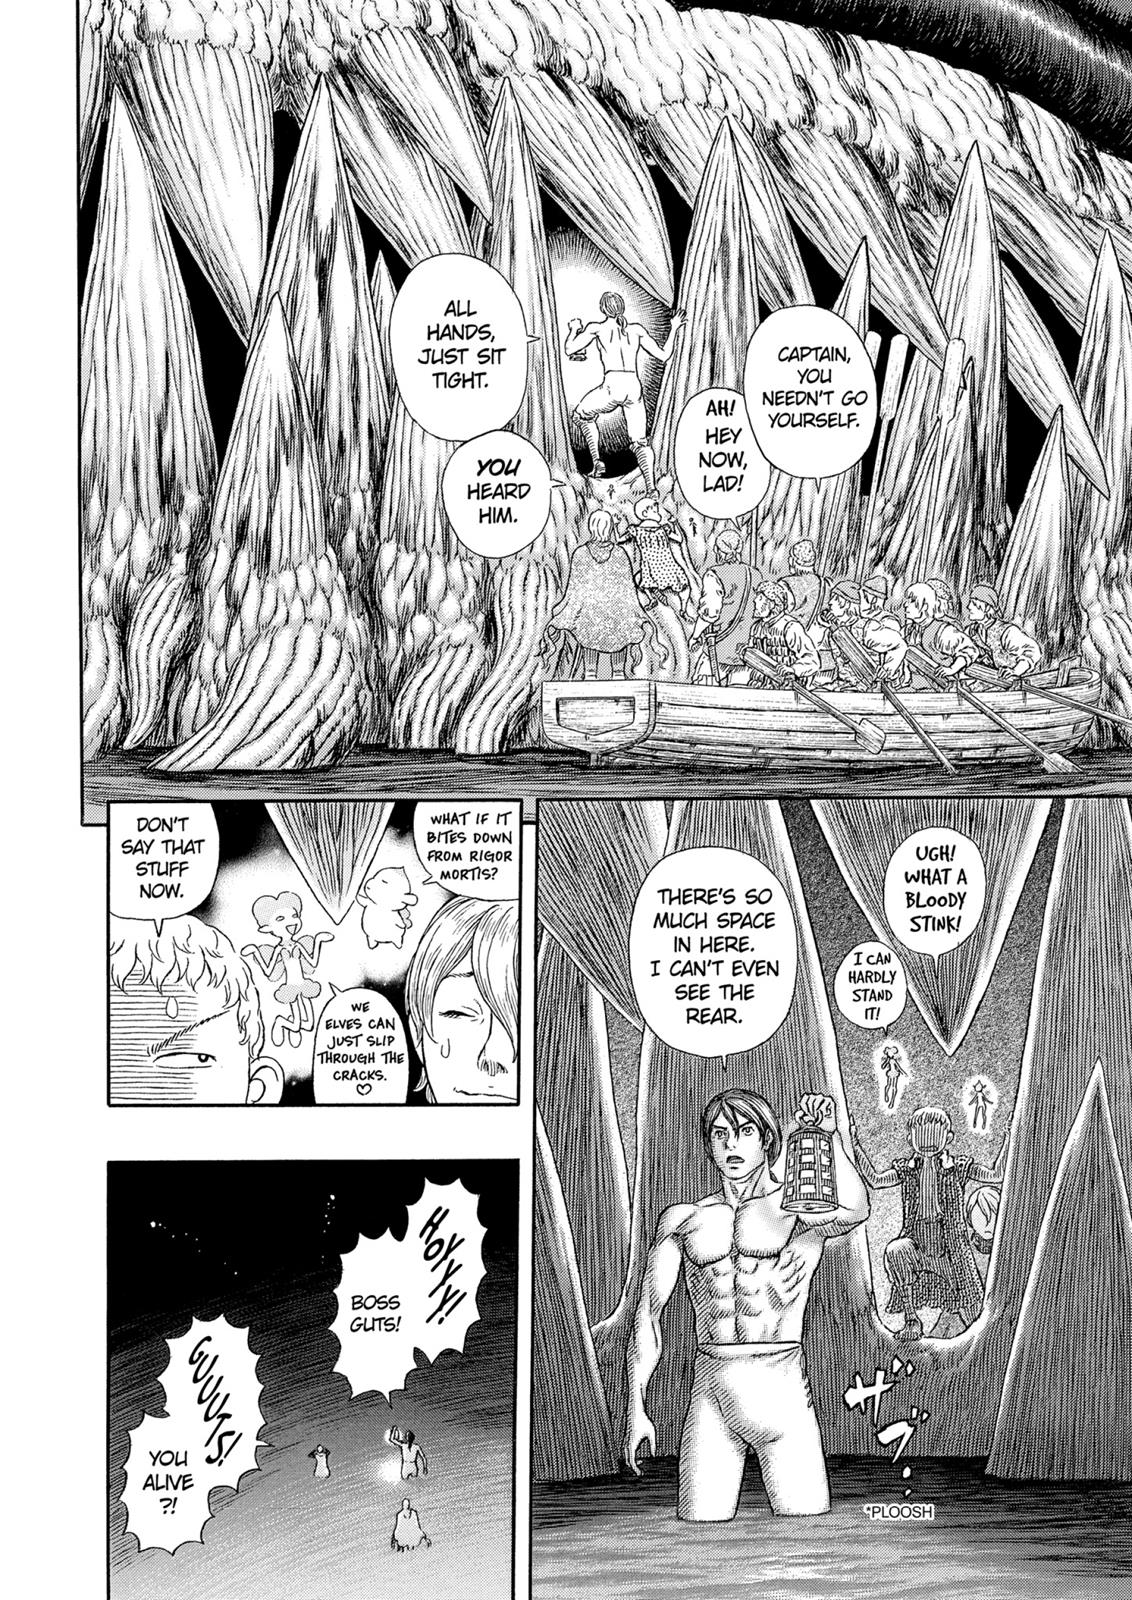 Berserk Manga Chapter 327 image 15